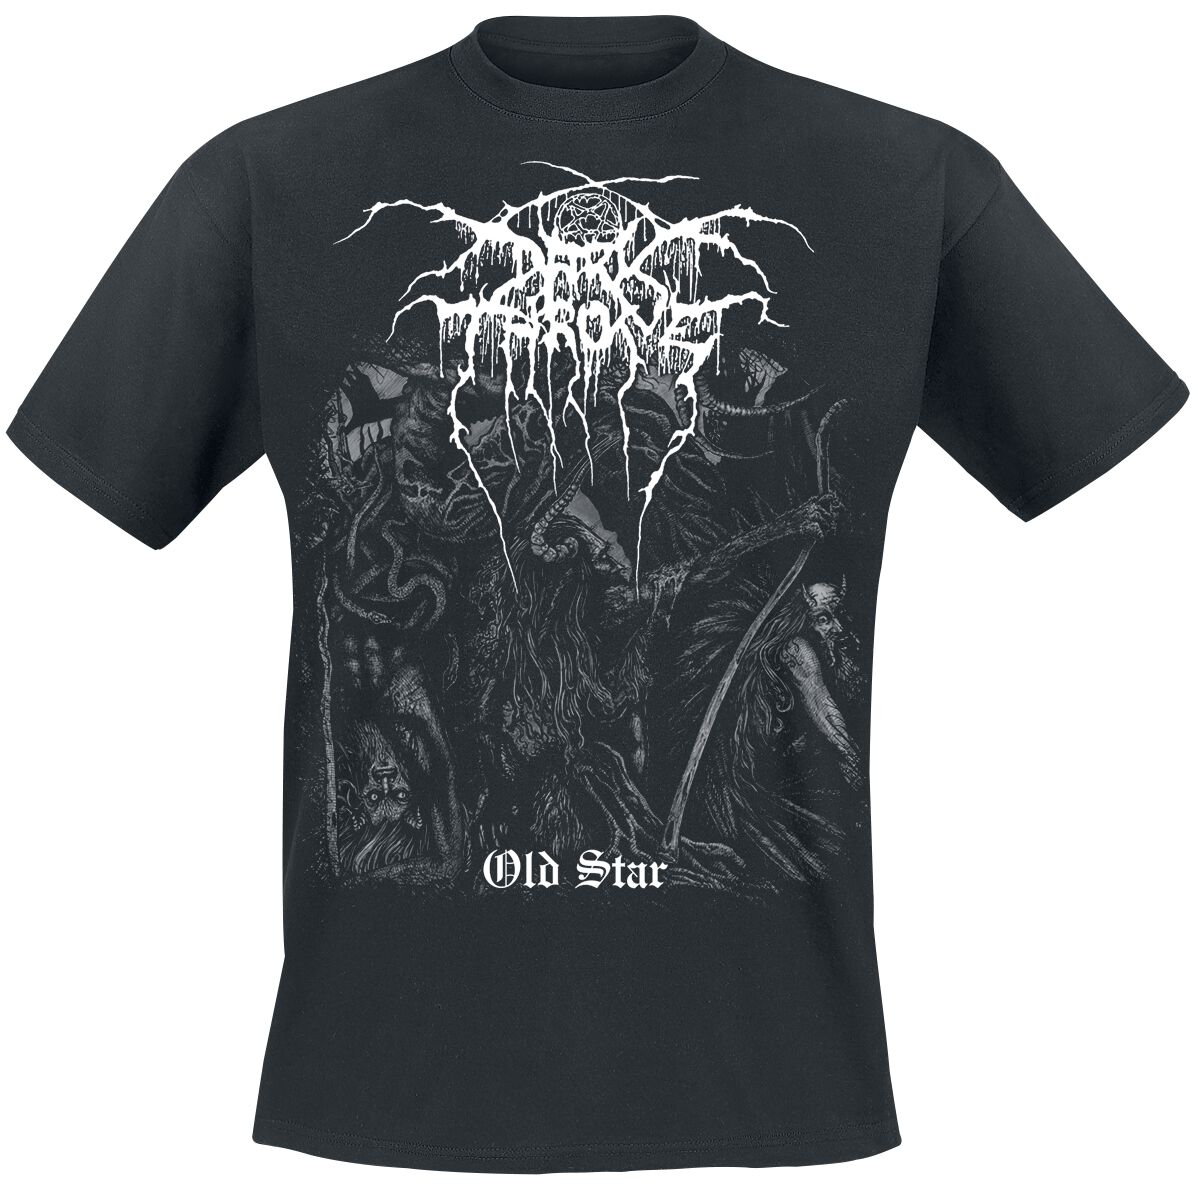 Darkthrone T-Shirt - Old Star - M bis XXL - für Männer - Größe XL - schwarz  - Lizenziertes Merchandise!